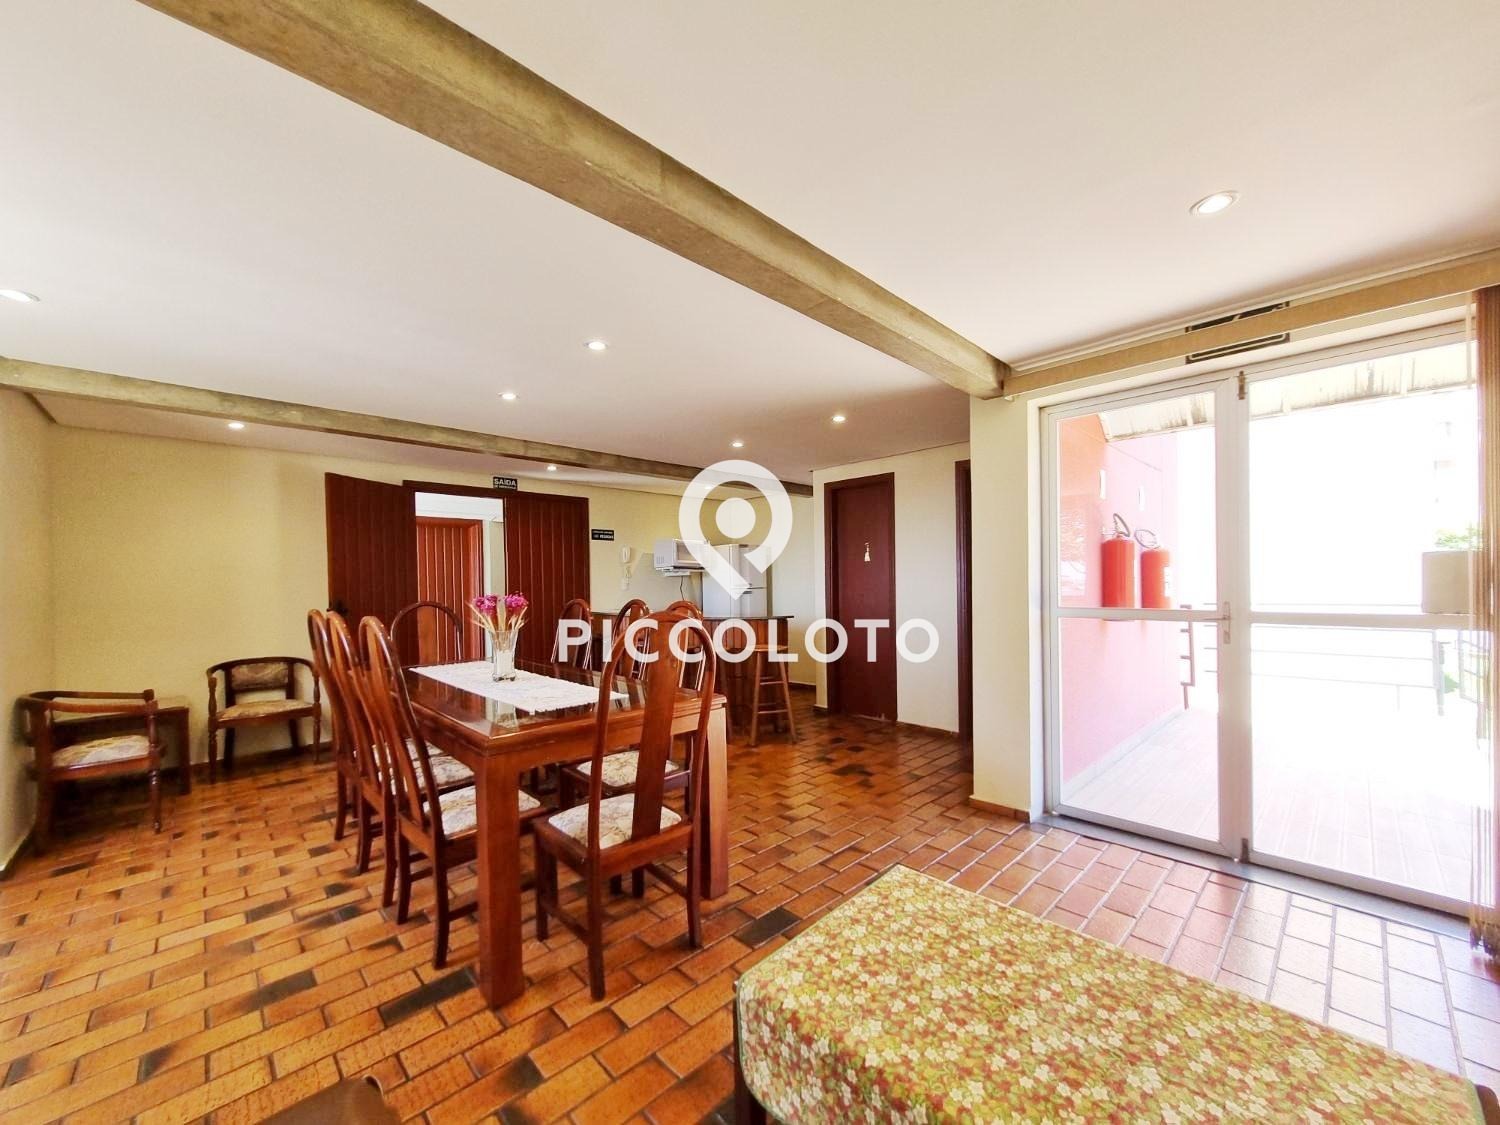 Piccoloto -Apartamento à venda no Vila Nova em Campinas